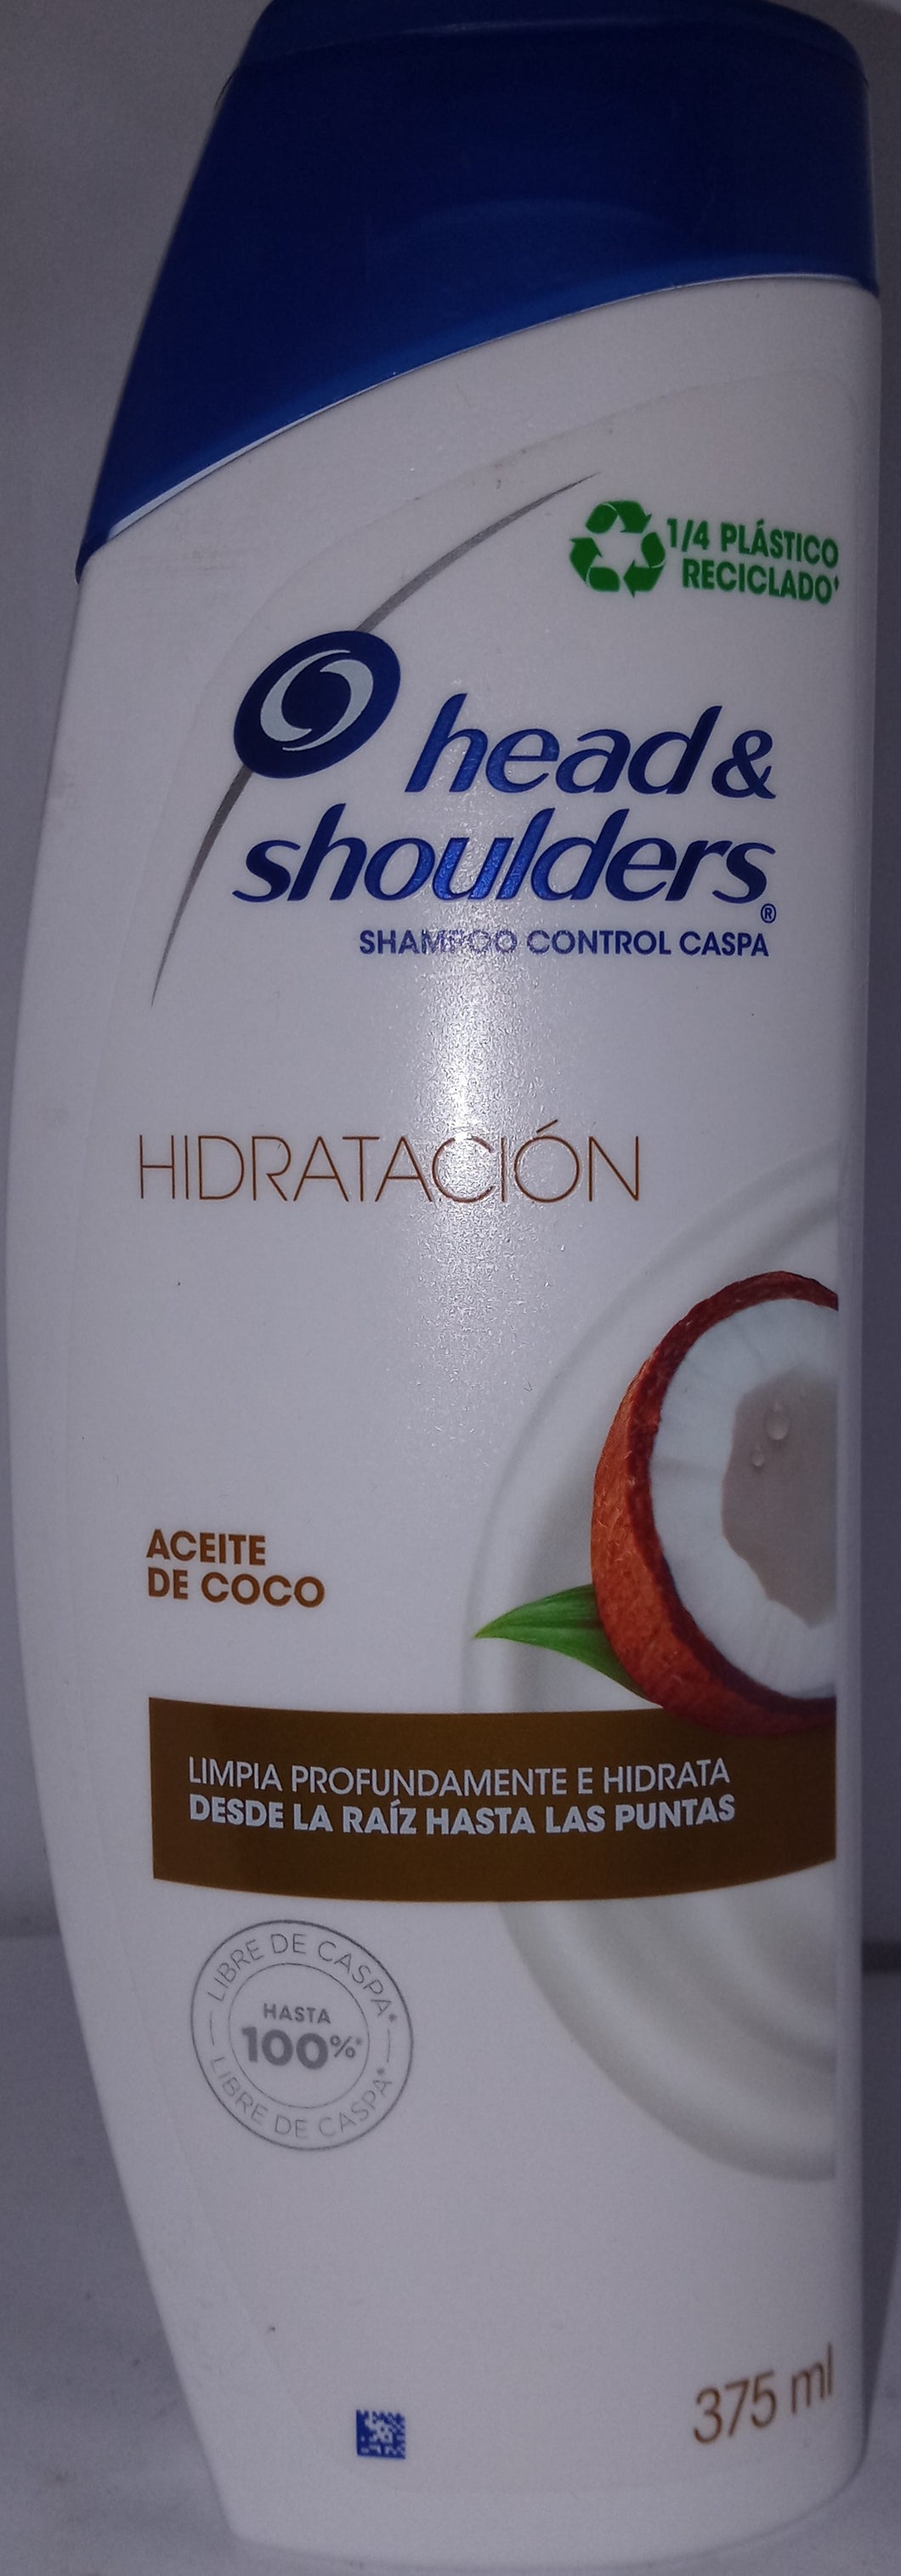 Shampoo Head and shoulders aceite de coco 375ml